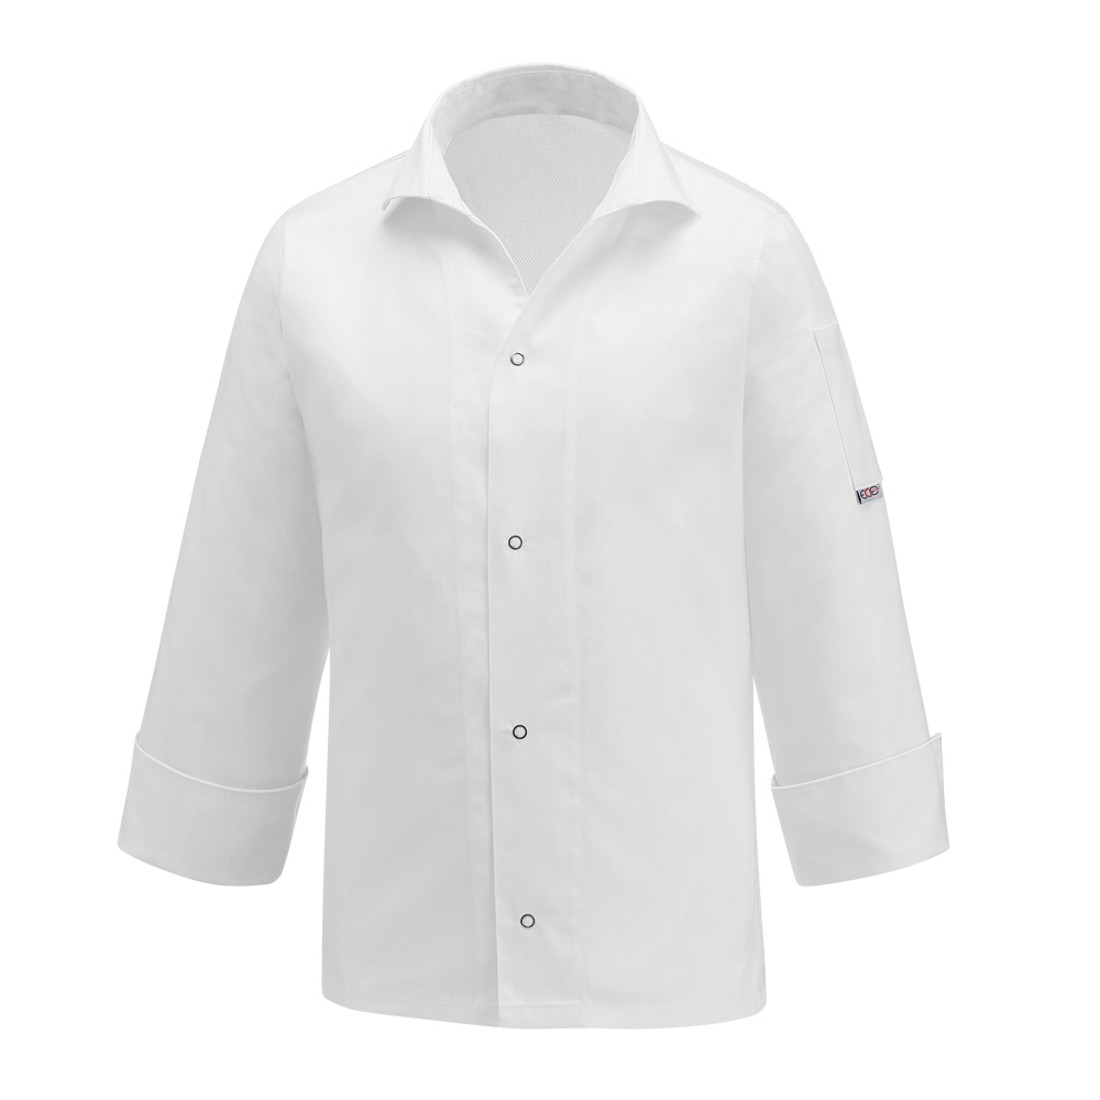 Vip Chef's Jacket, 100% cotton - Safetywear